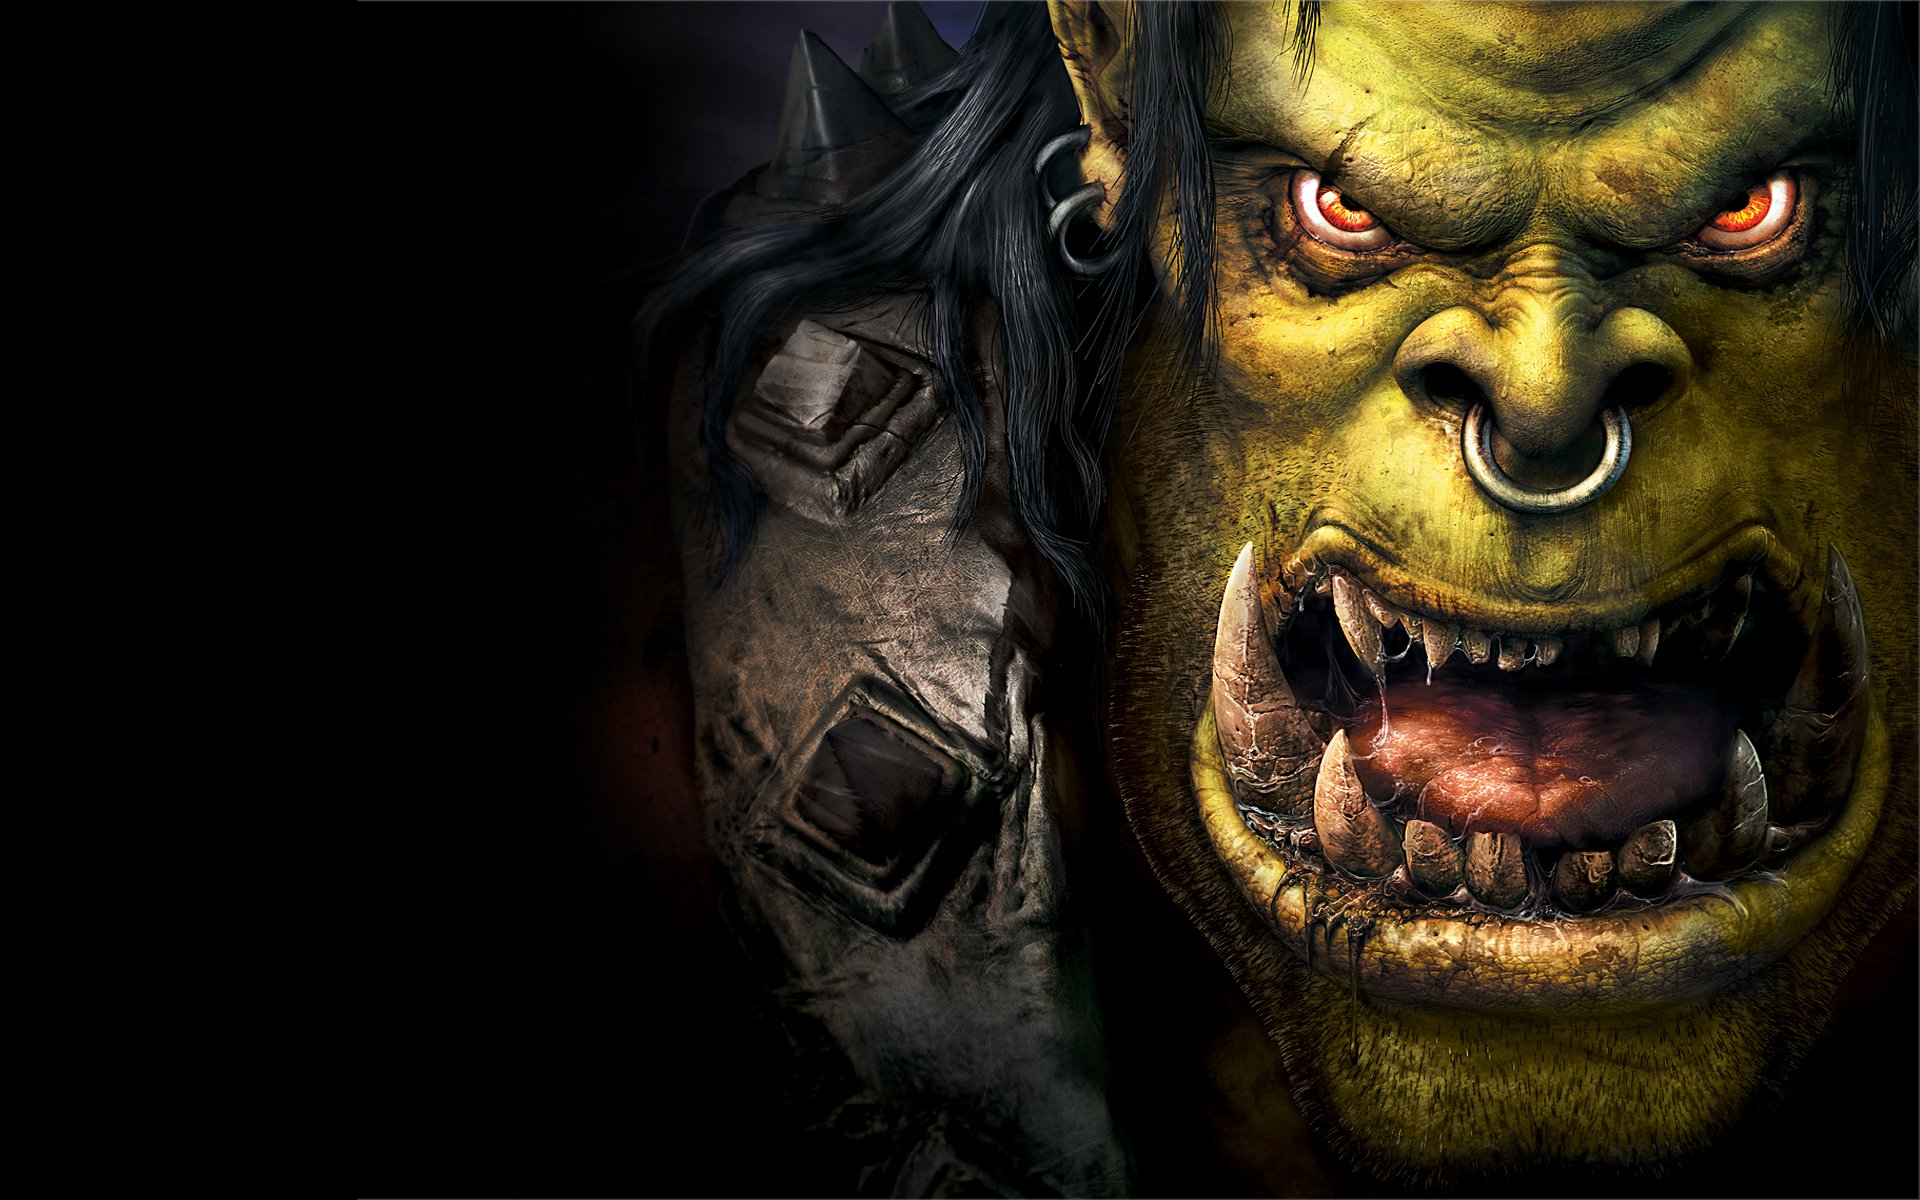 WarCraft 3: Reign of Chaos (PC) - Games Wallpaper & Desktop ...